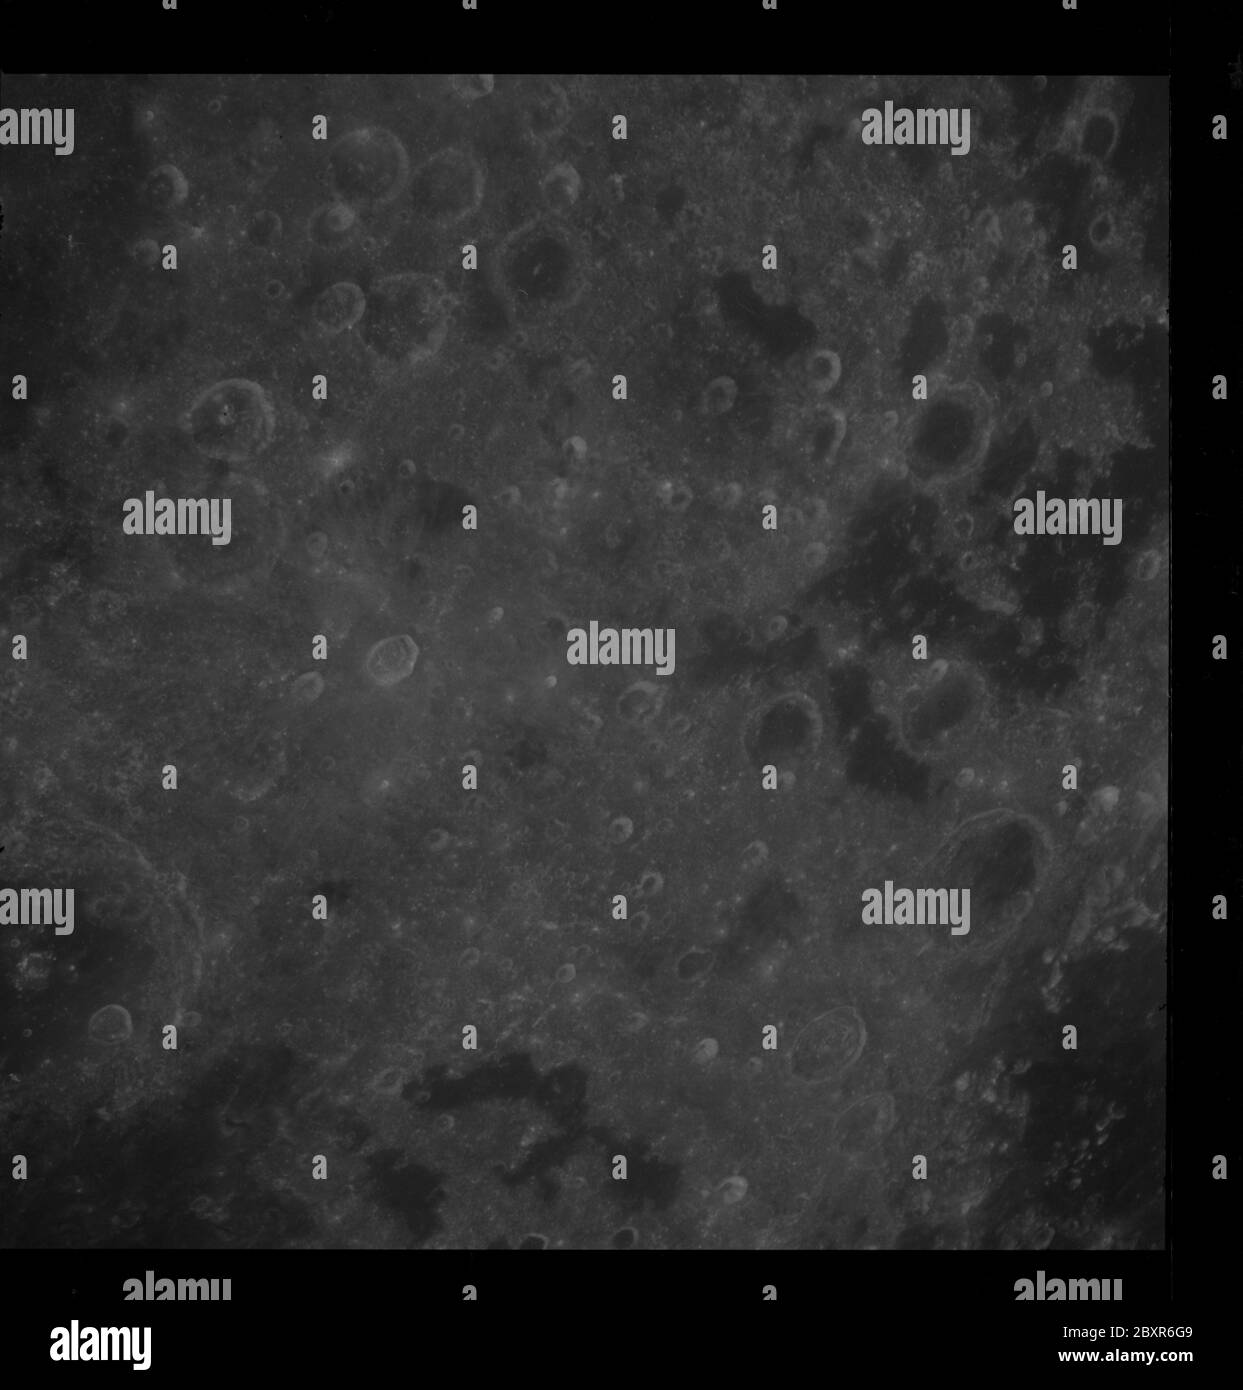 AS08-12-2206 - Apollo 8 - Apollo 8 Mission image, mer des vagues, Mare Undarum, T/O 66, 59, 67; portée et contenu: La base de données originale décrit ceci comme: Description: Apollo 8,Lune, mer des vagues, Mare Undarum. Cible d'opportunité (T/O) 66 est de Mare Crisium RIM, remplir pour pauvre obiter lunaire 4 (LO IV) photos, T/O 59 Mare Symthii, anneaux cratères, T/O 67 Sud de Mare Crisium RIM, remplir pour pauvres LO IV photos. Image prise sur la Révolution 10 lors de l'injection transterrestre (TEI). Latitude 7 Nord,Longitude 74 est. Mode d'inclinaison de la caméra : proche de la verticale. Direction : nord. Angle du soleil : 43. Magazine Original film Banque D'Images